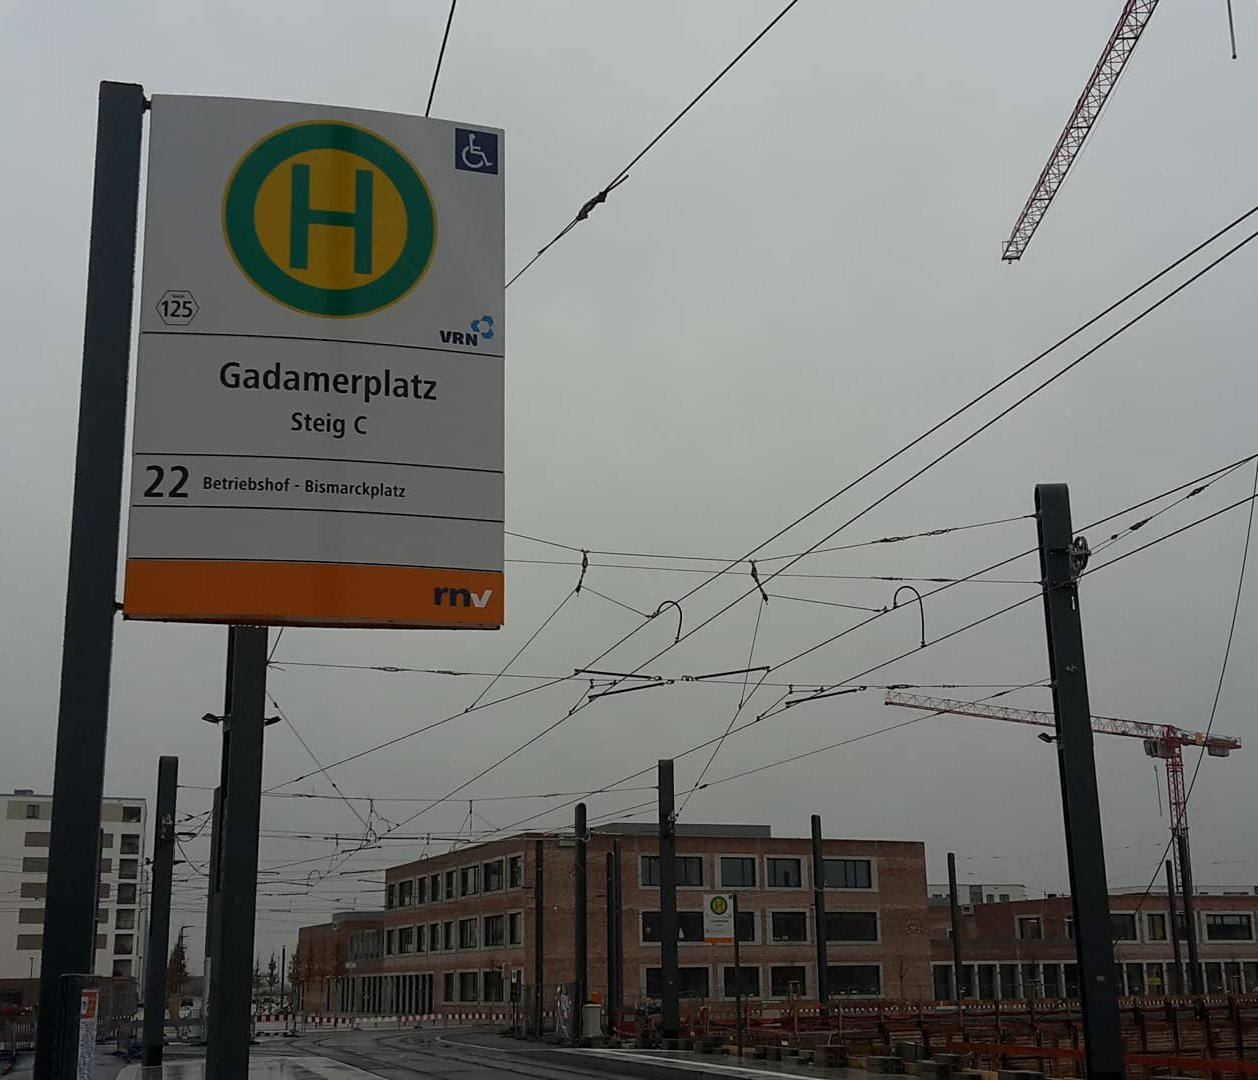 Gadamerplatz Haltestelle